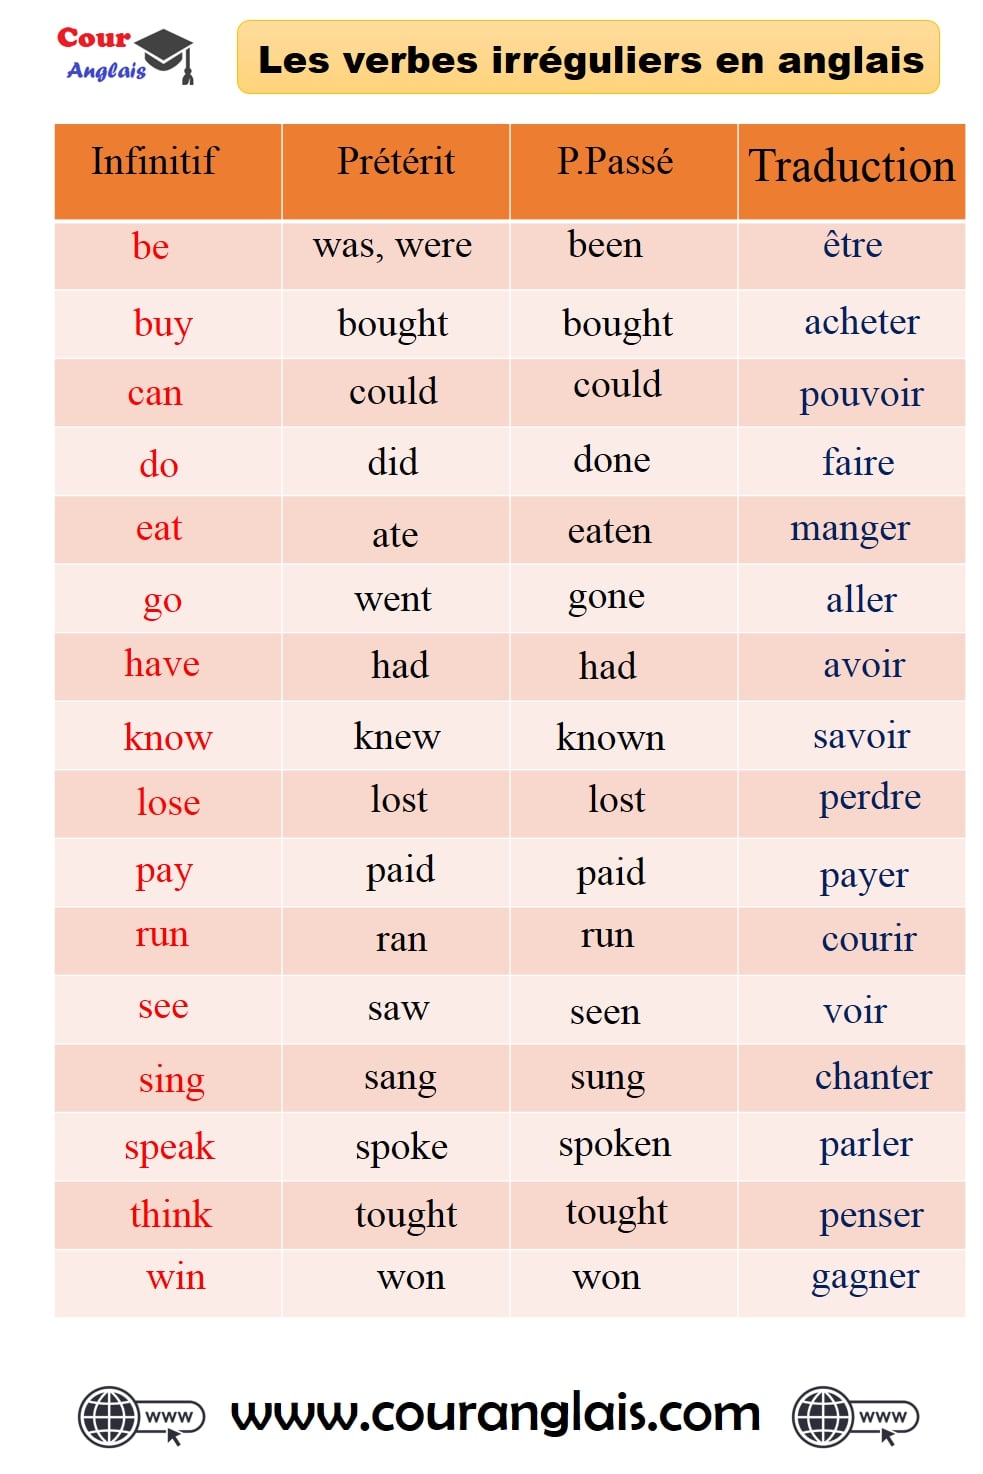 les verbes irreguliers en anglais